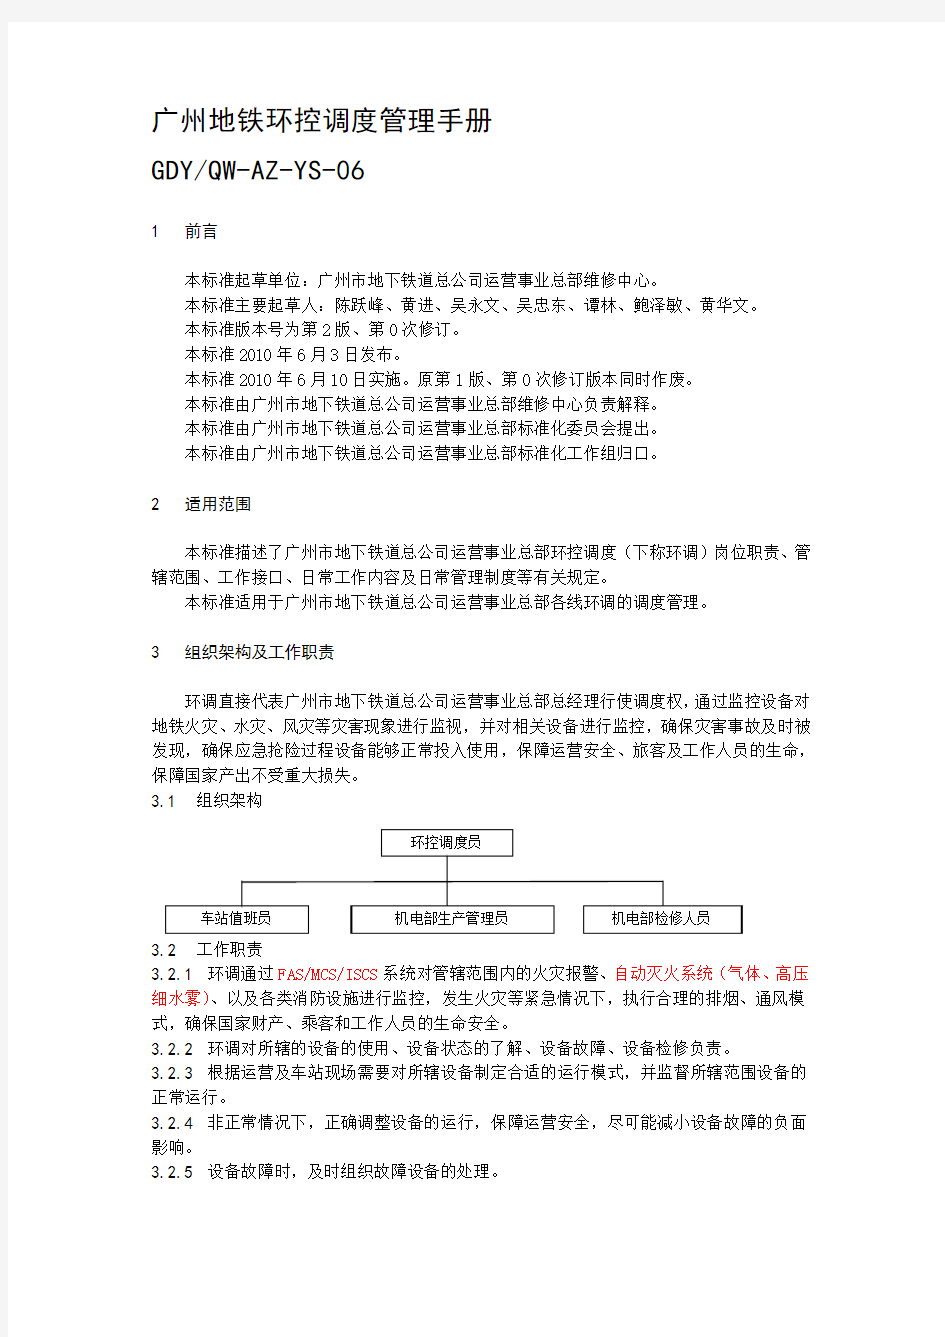 YS06广州地铁环控调度管理手册(2.0)